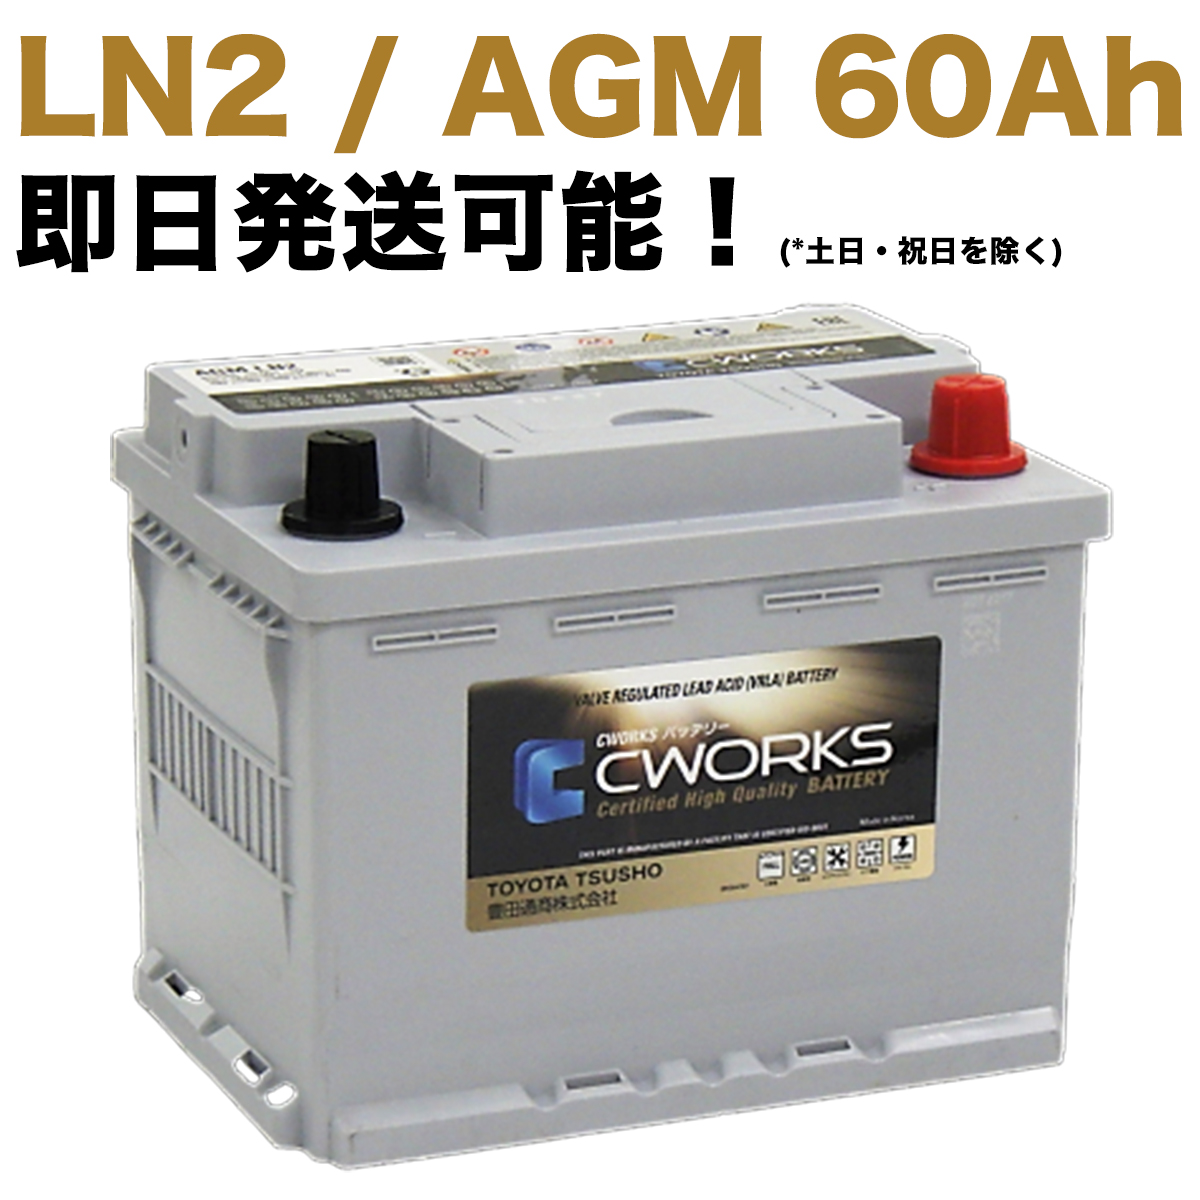 【保証付】新品 バッテリー AGM L2 レクサス(LEXUS) RX450h DAA-GYL25W 2GR-FXS HV AWD CWORKS 60Ah LN2 560901064 (360LN2-MF / 20HR 60Ah CCA460 EN)